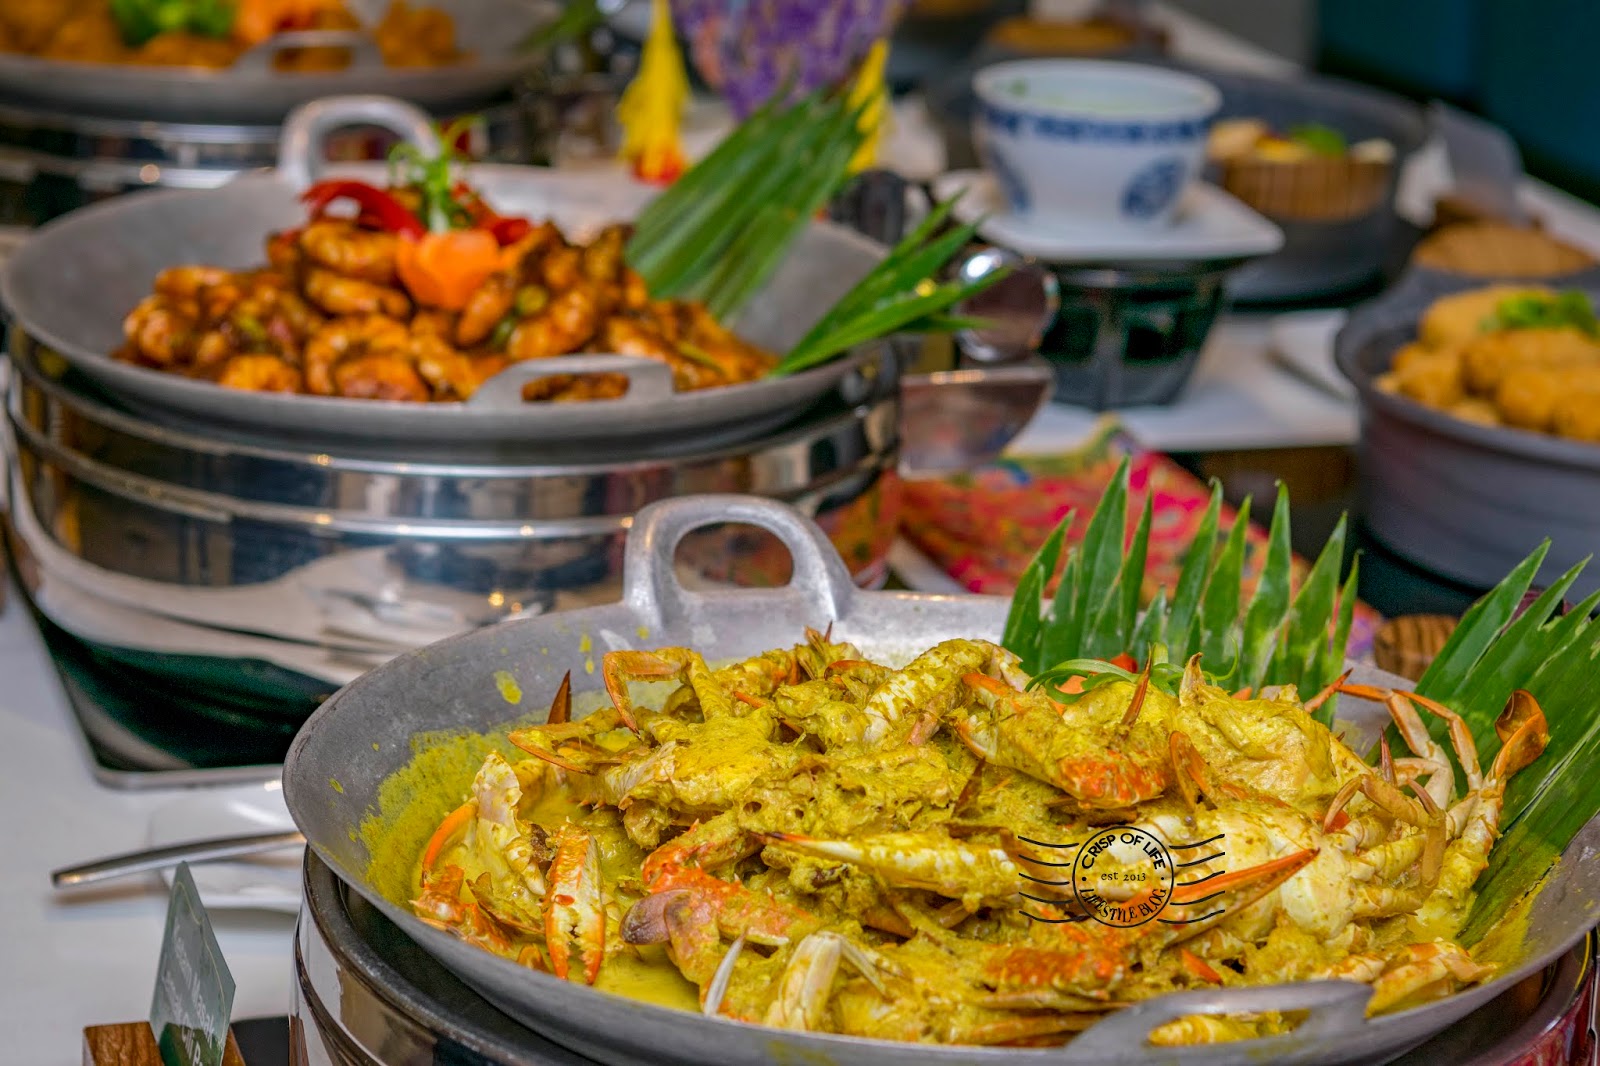 "Citarasa Nusatara" Ramadan 2019 Buffet @ Olive Tree Hotel Penang